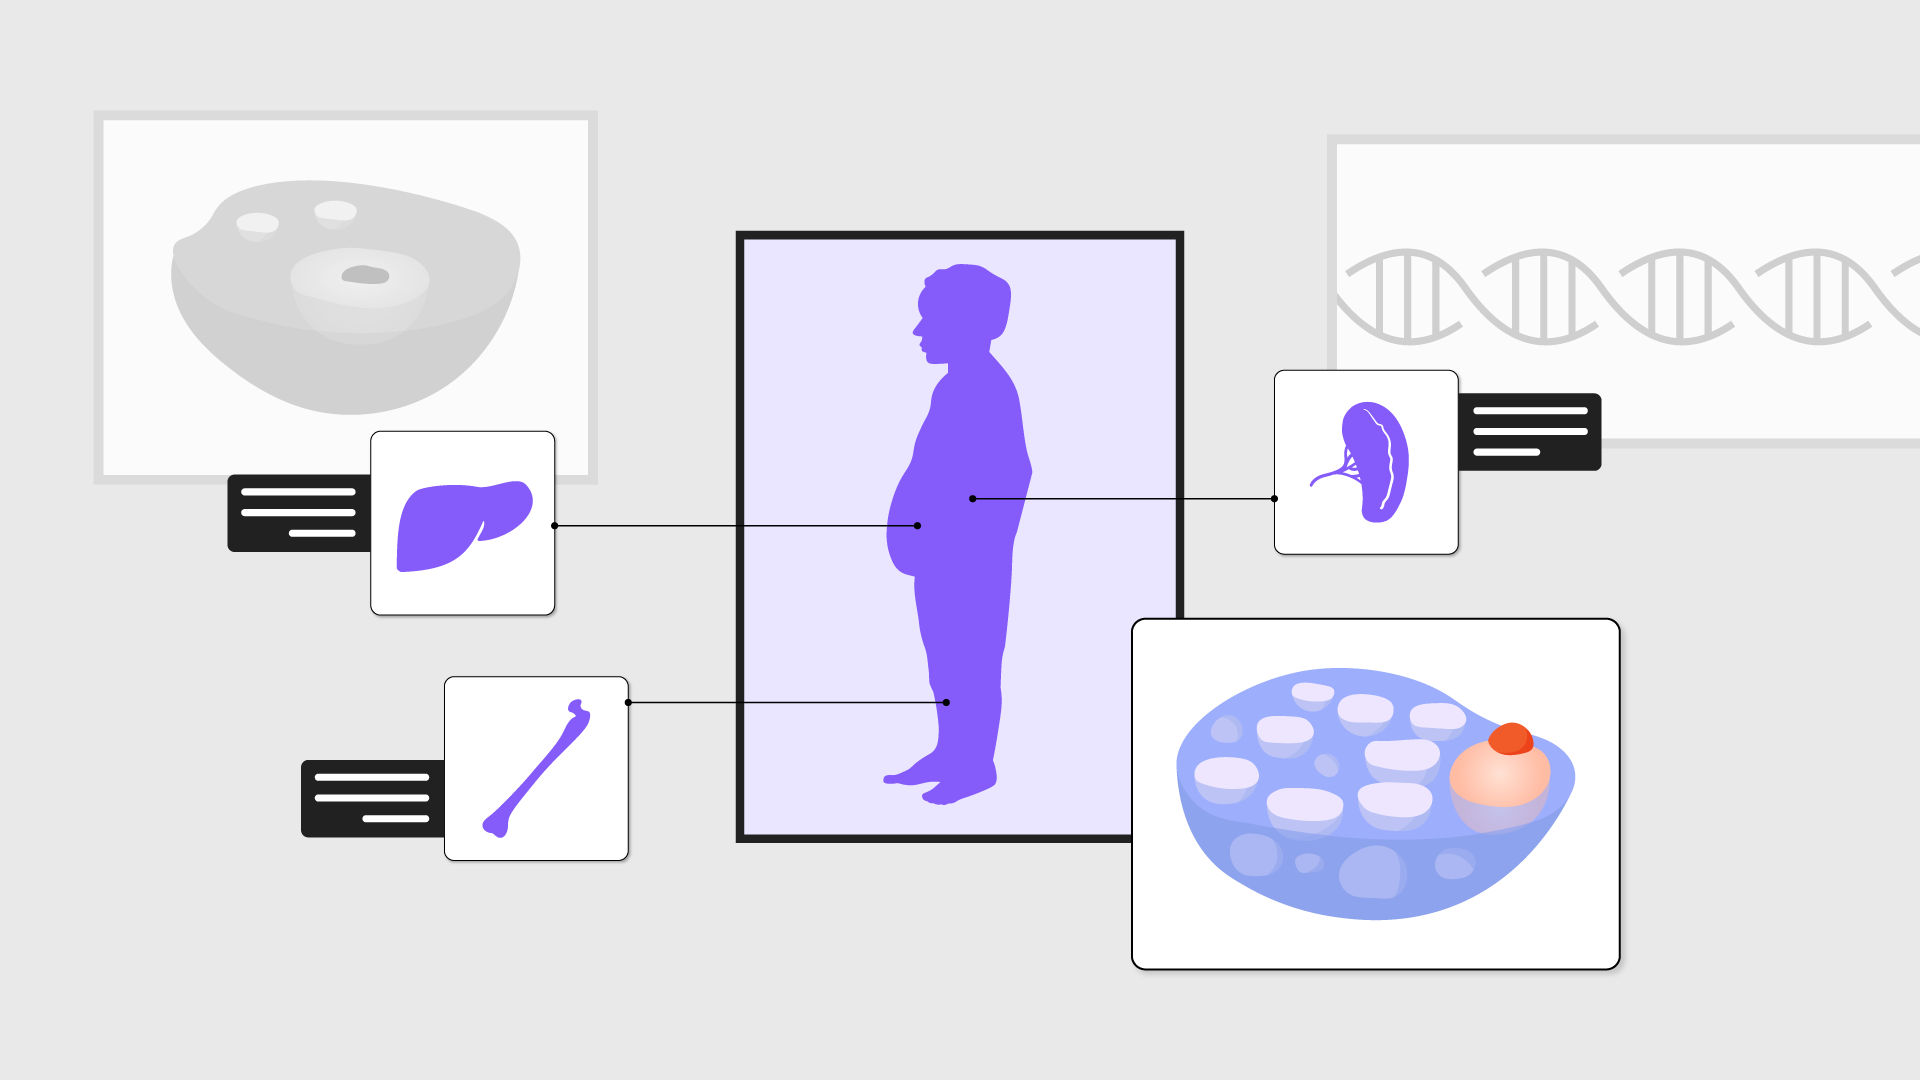 criança no centro da imagem com distensão abdominal e ícones ao lado de um osso, fígado, baço e célula de gaucher